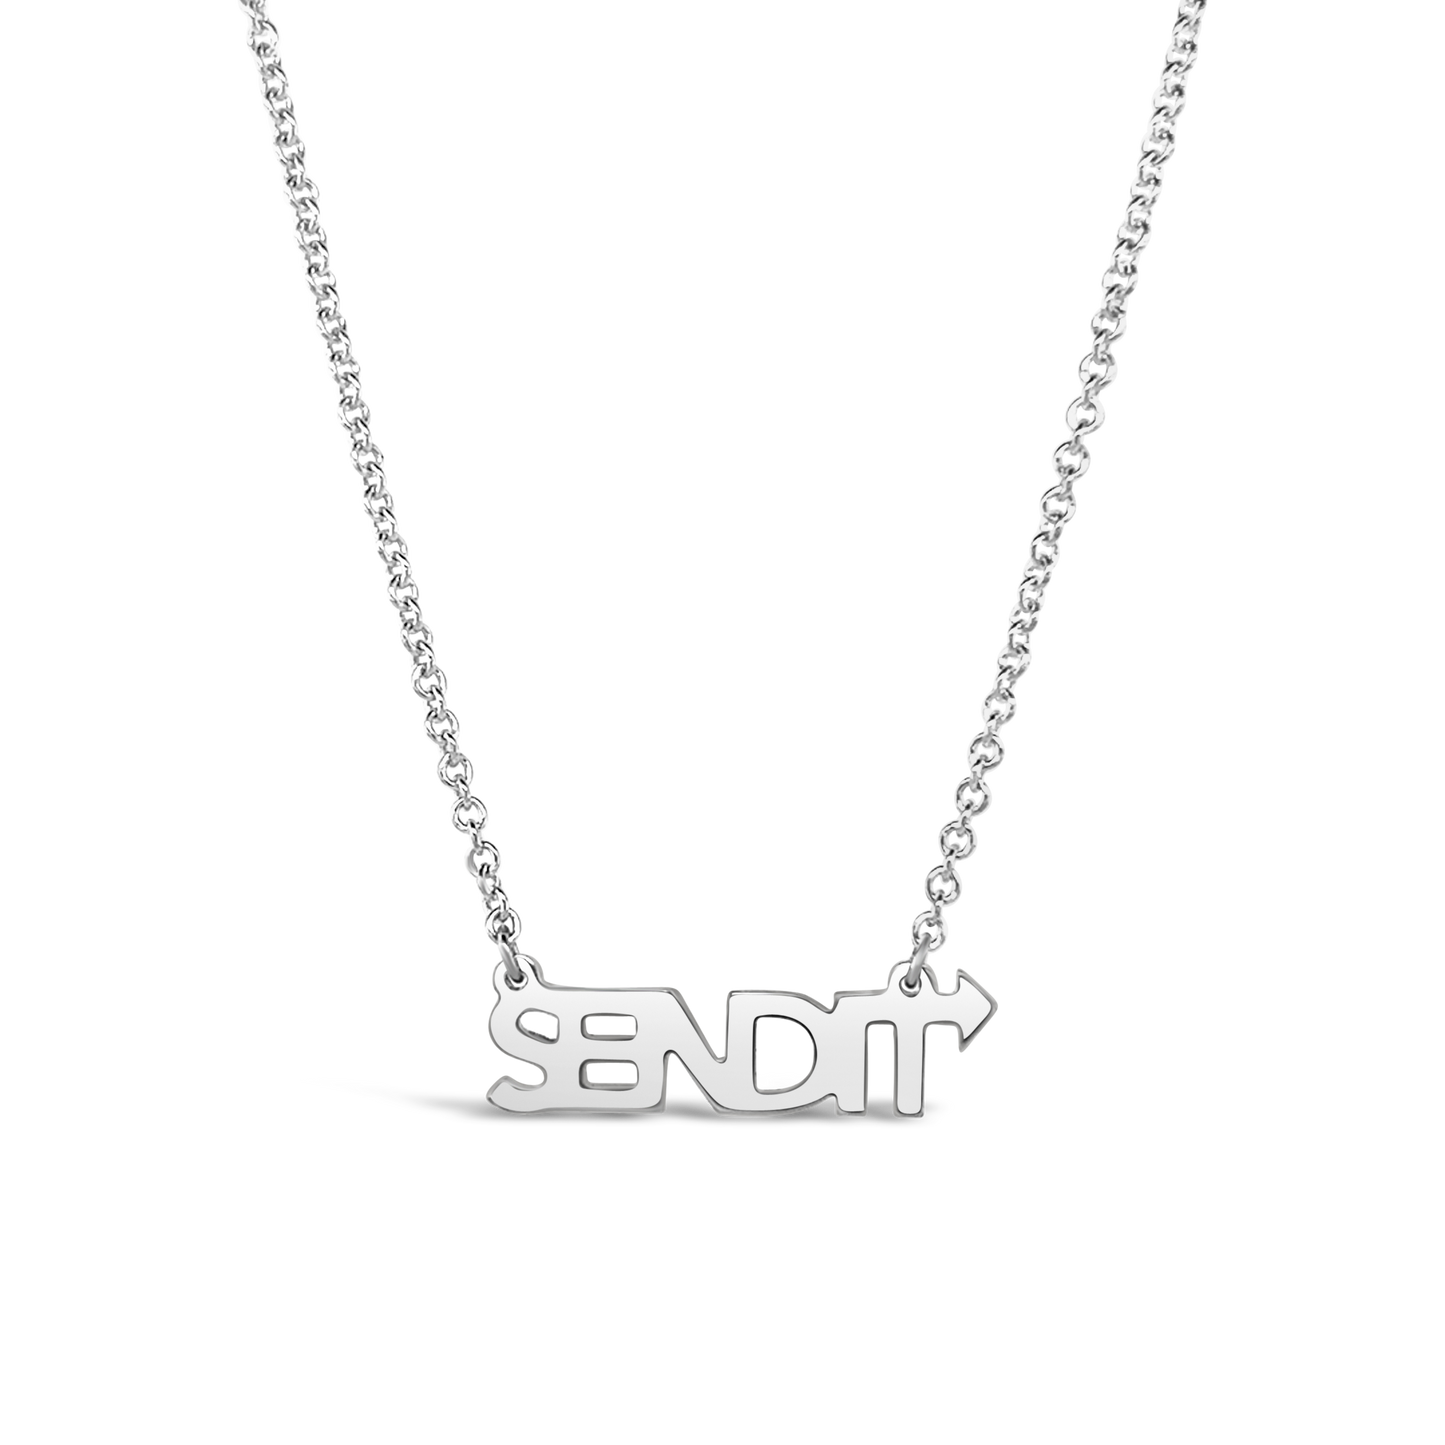 Sendit Necklace - Silver